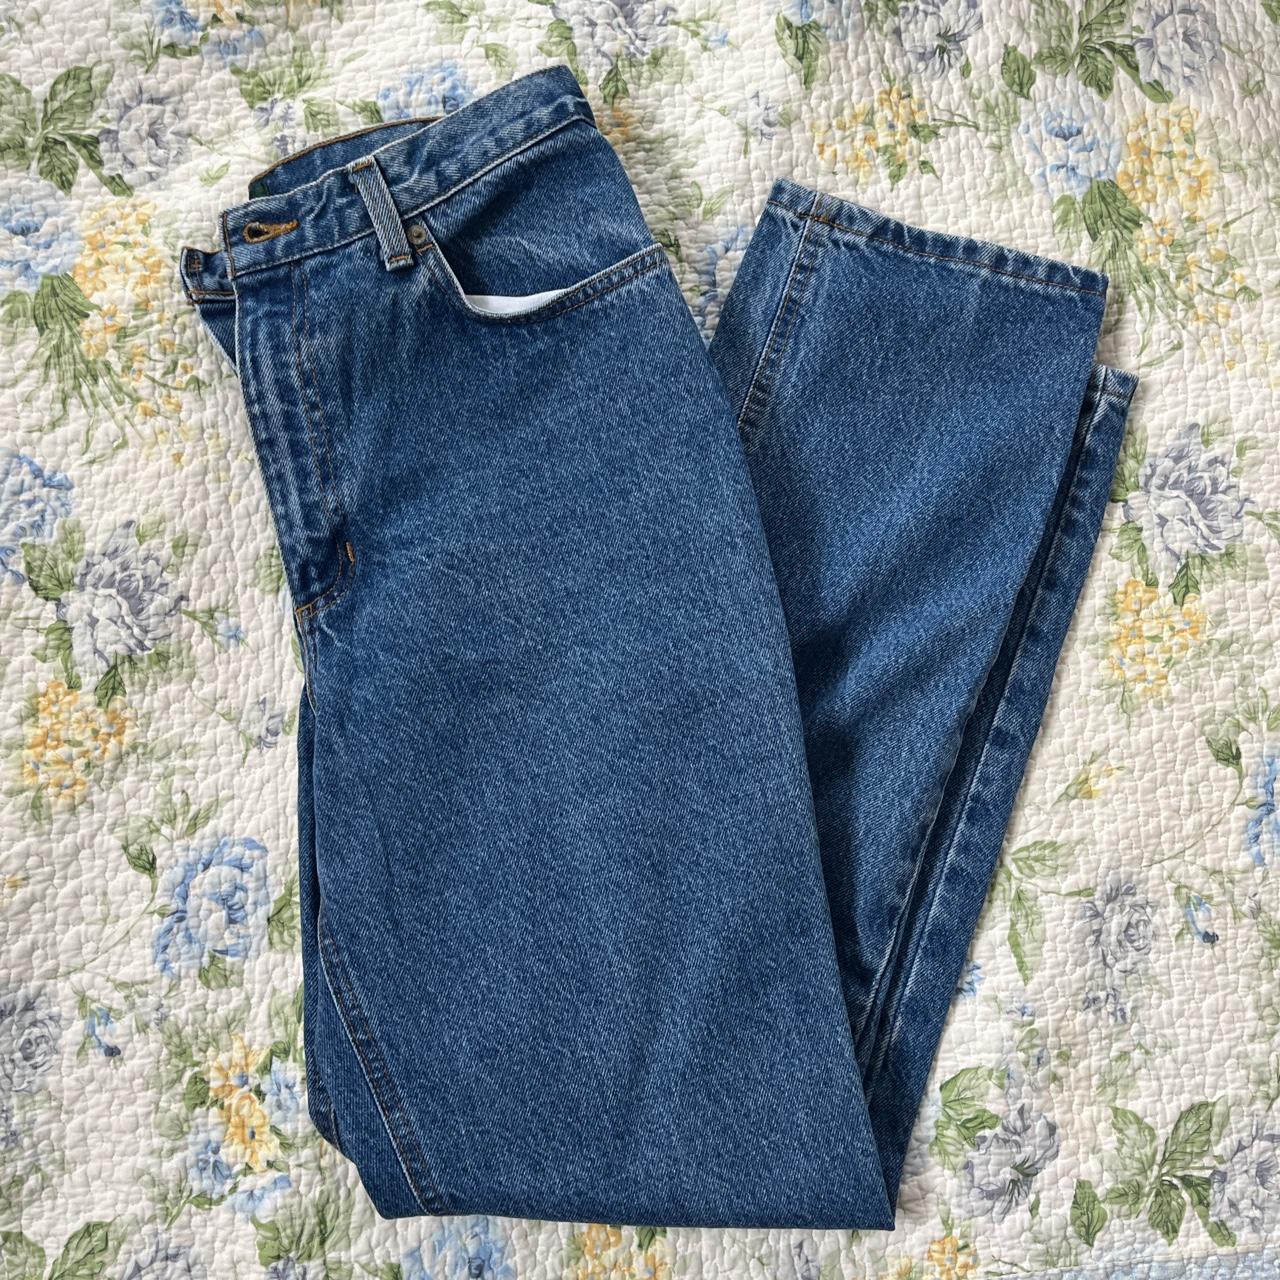 Ralph Lauren Jeans Co. blue denim medium wash jeans.... - Depop